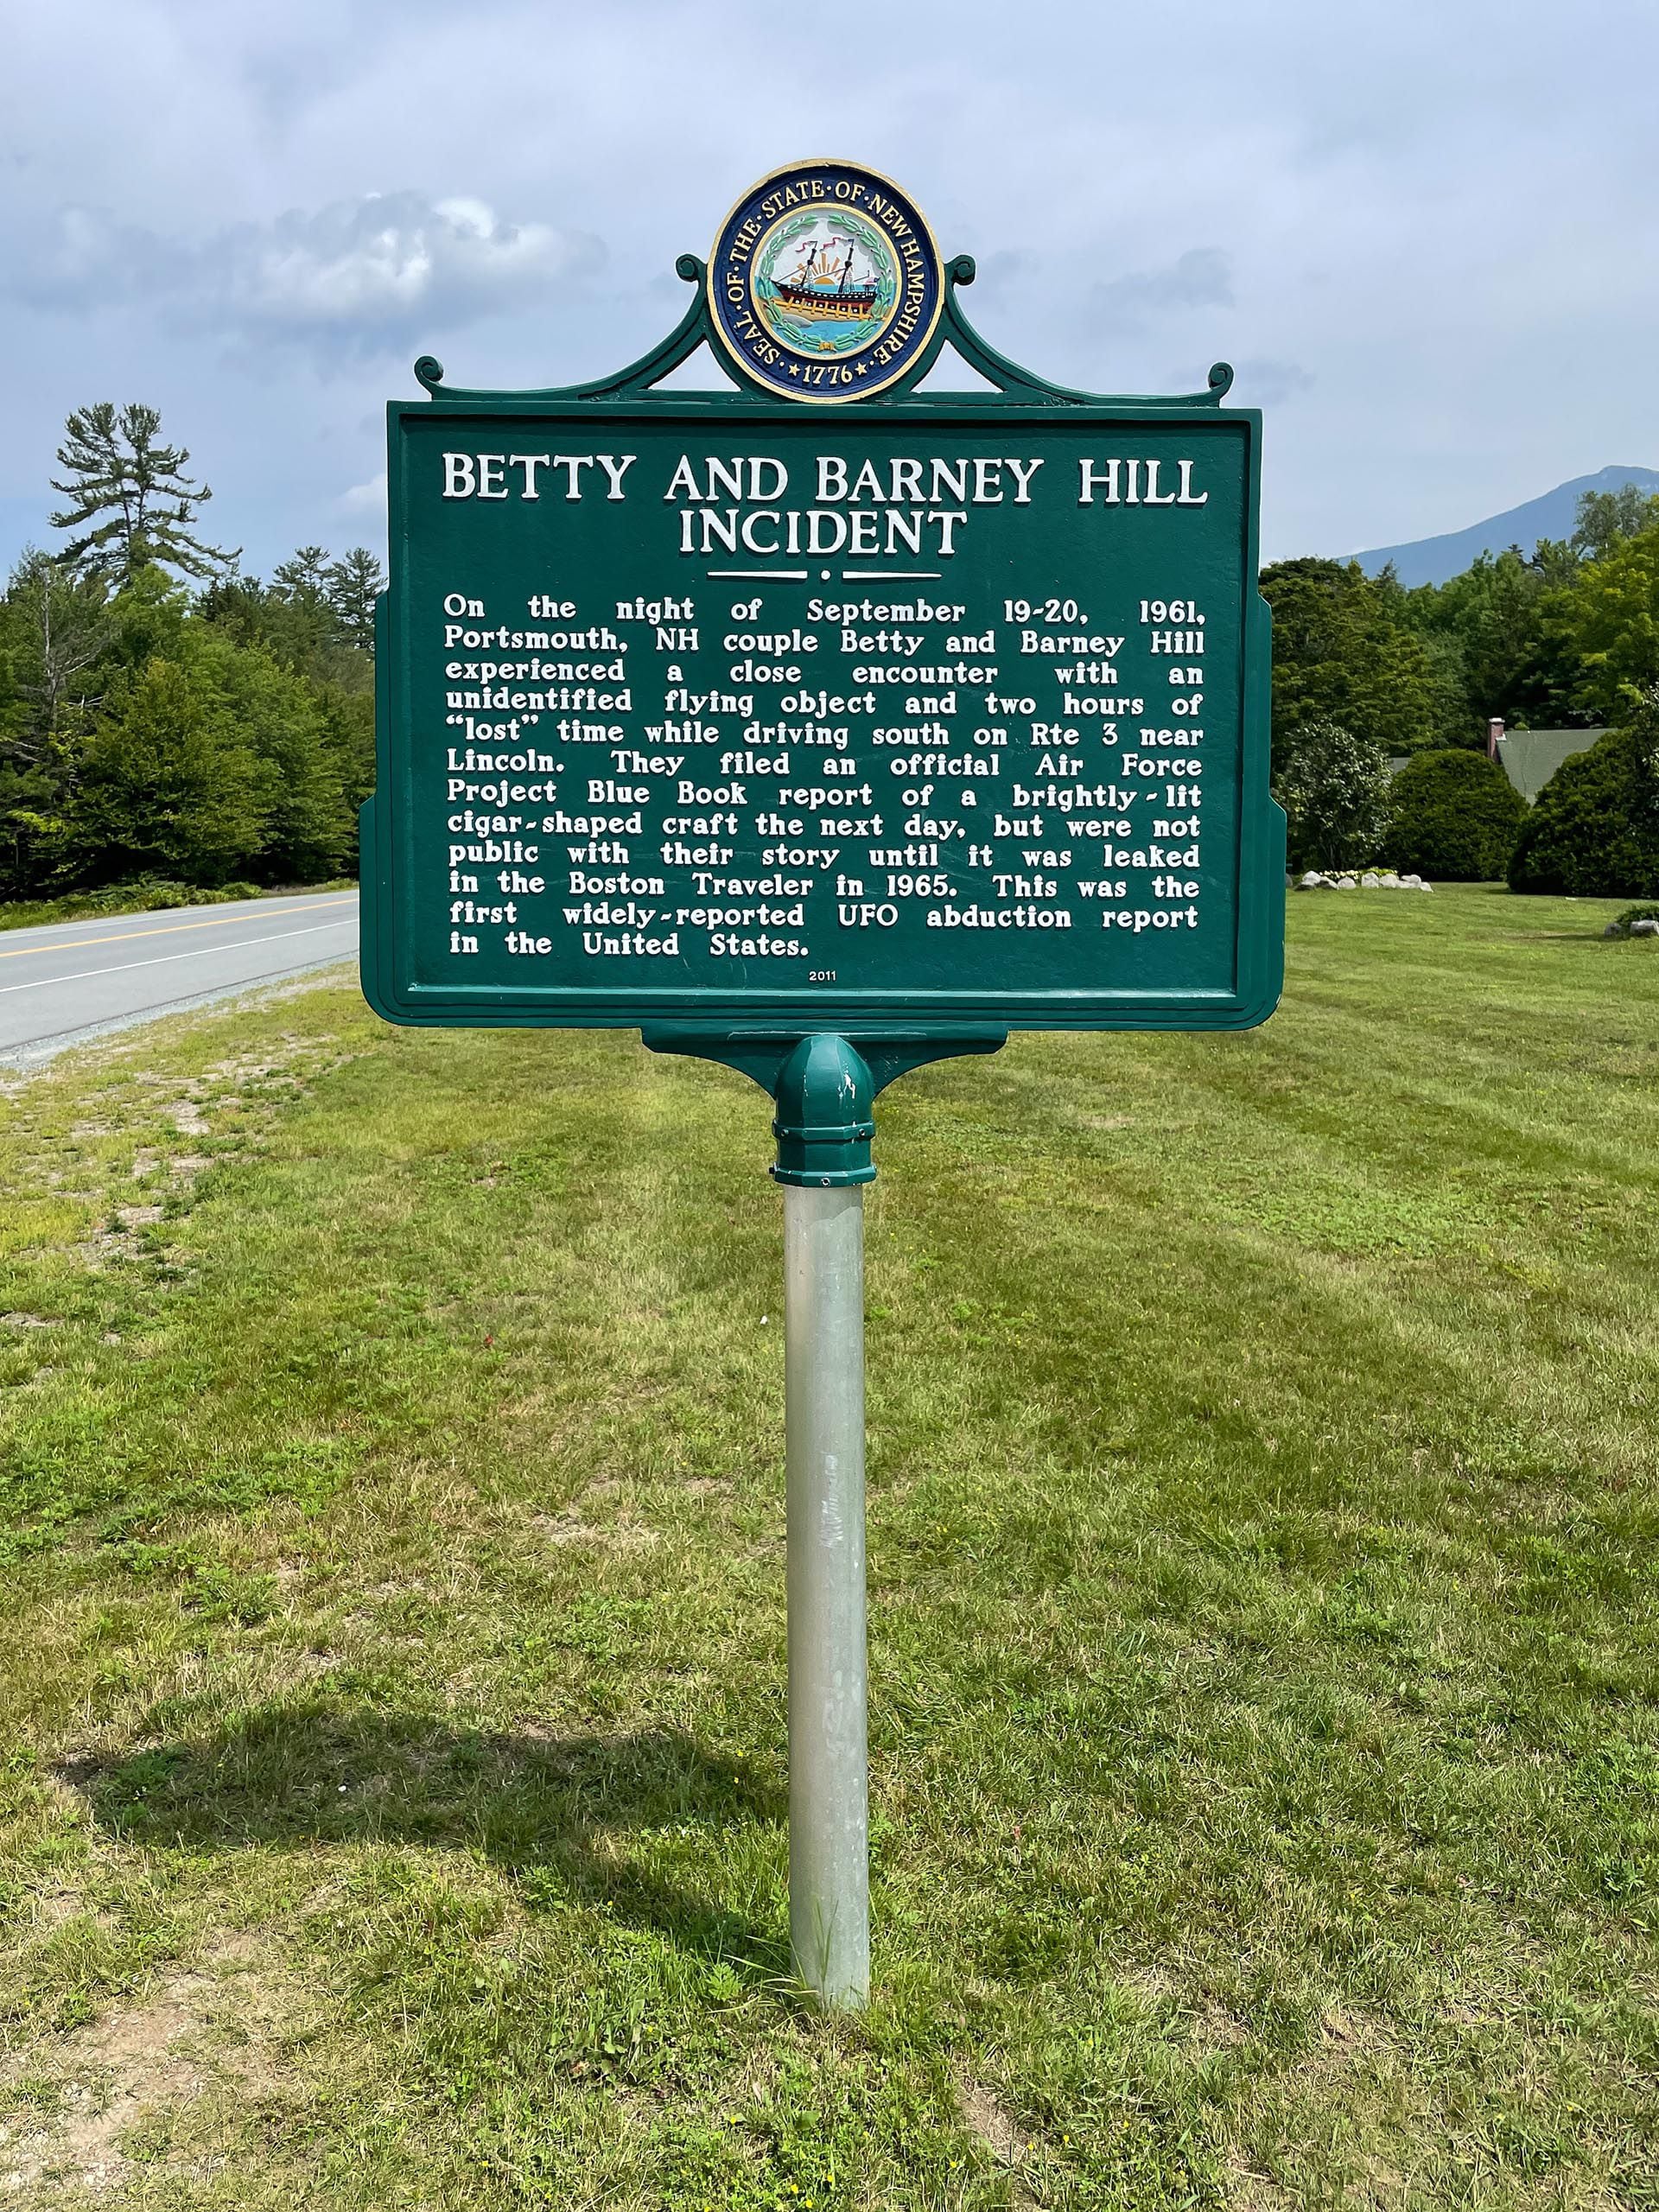 Un cartel instalado a la vera de la ruta 3 en Lincoln, New Hampshire, recuerda el episodio de Betty y Barney Hill